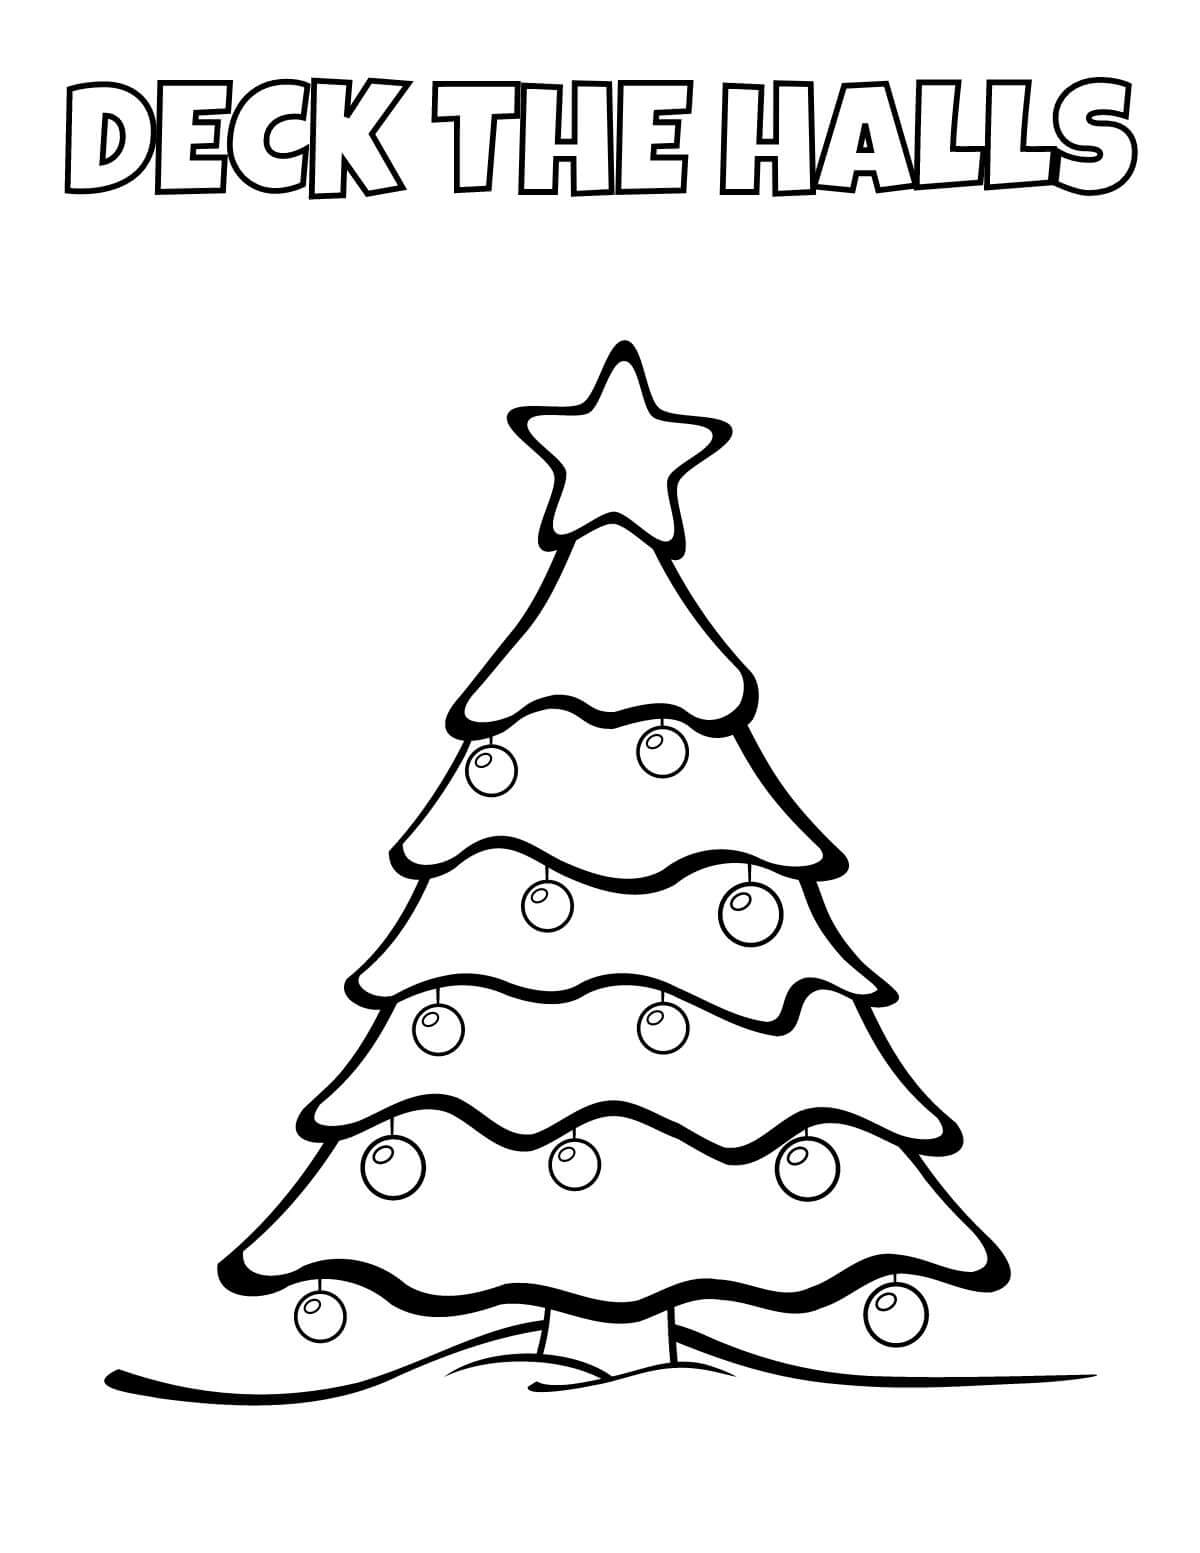 Deck the Halls Christmas tree